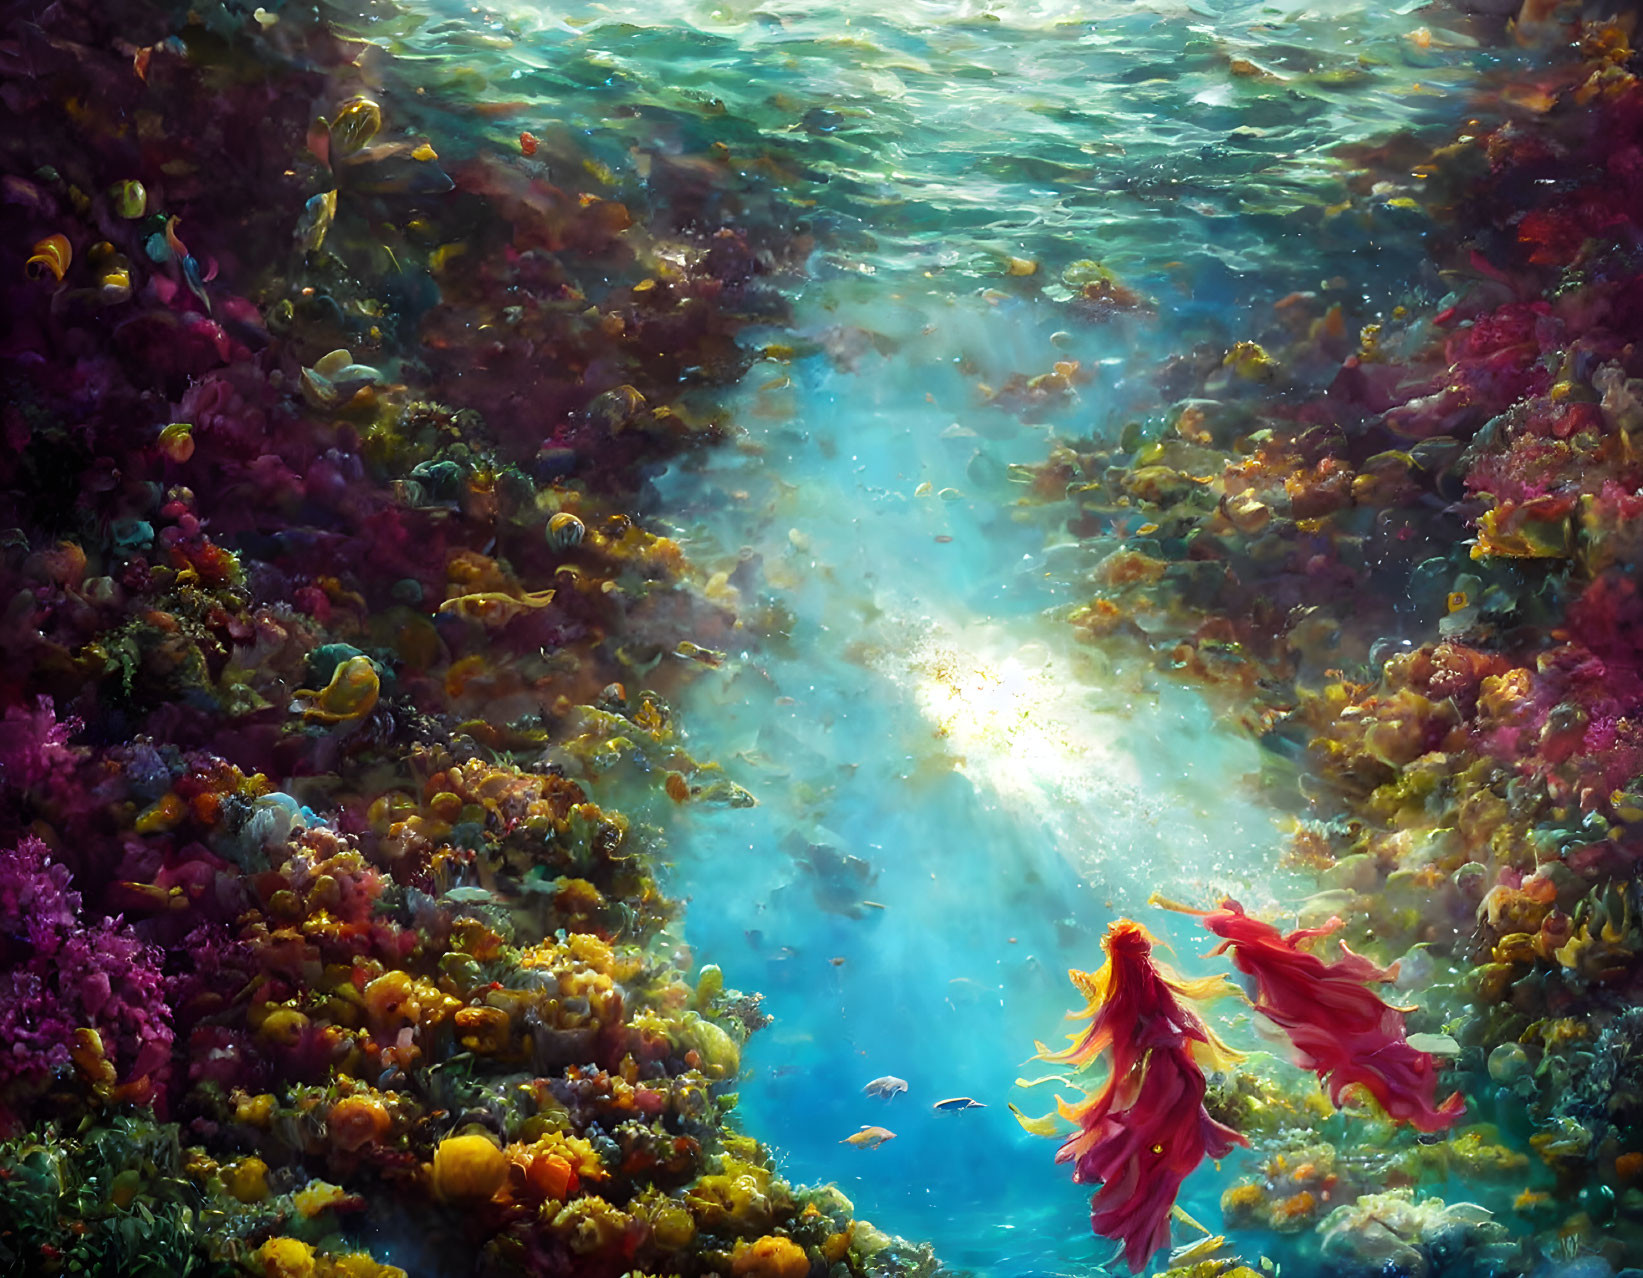 Vibrant coral reefs in colorful underwater scene